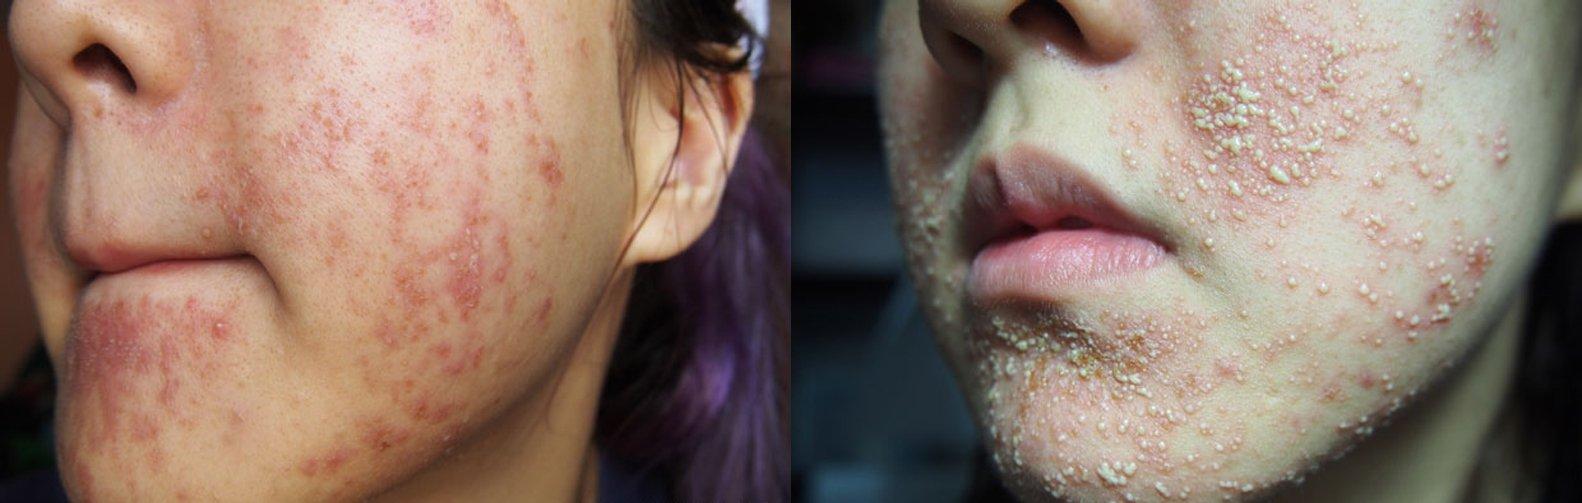 Vào giai đoạn cuối, da bắt đầu bùng phát mụn nghiêm trọng có thể là mụn viêm lẫn mụn bọc (Nguồn: Internet).